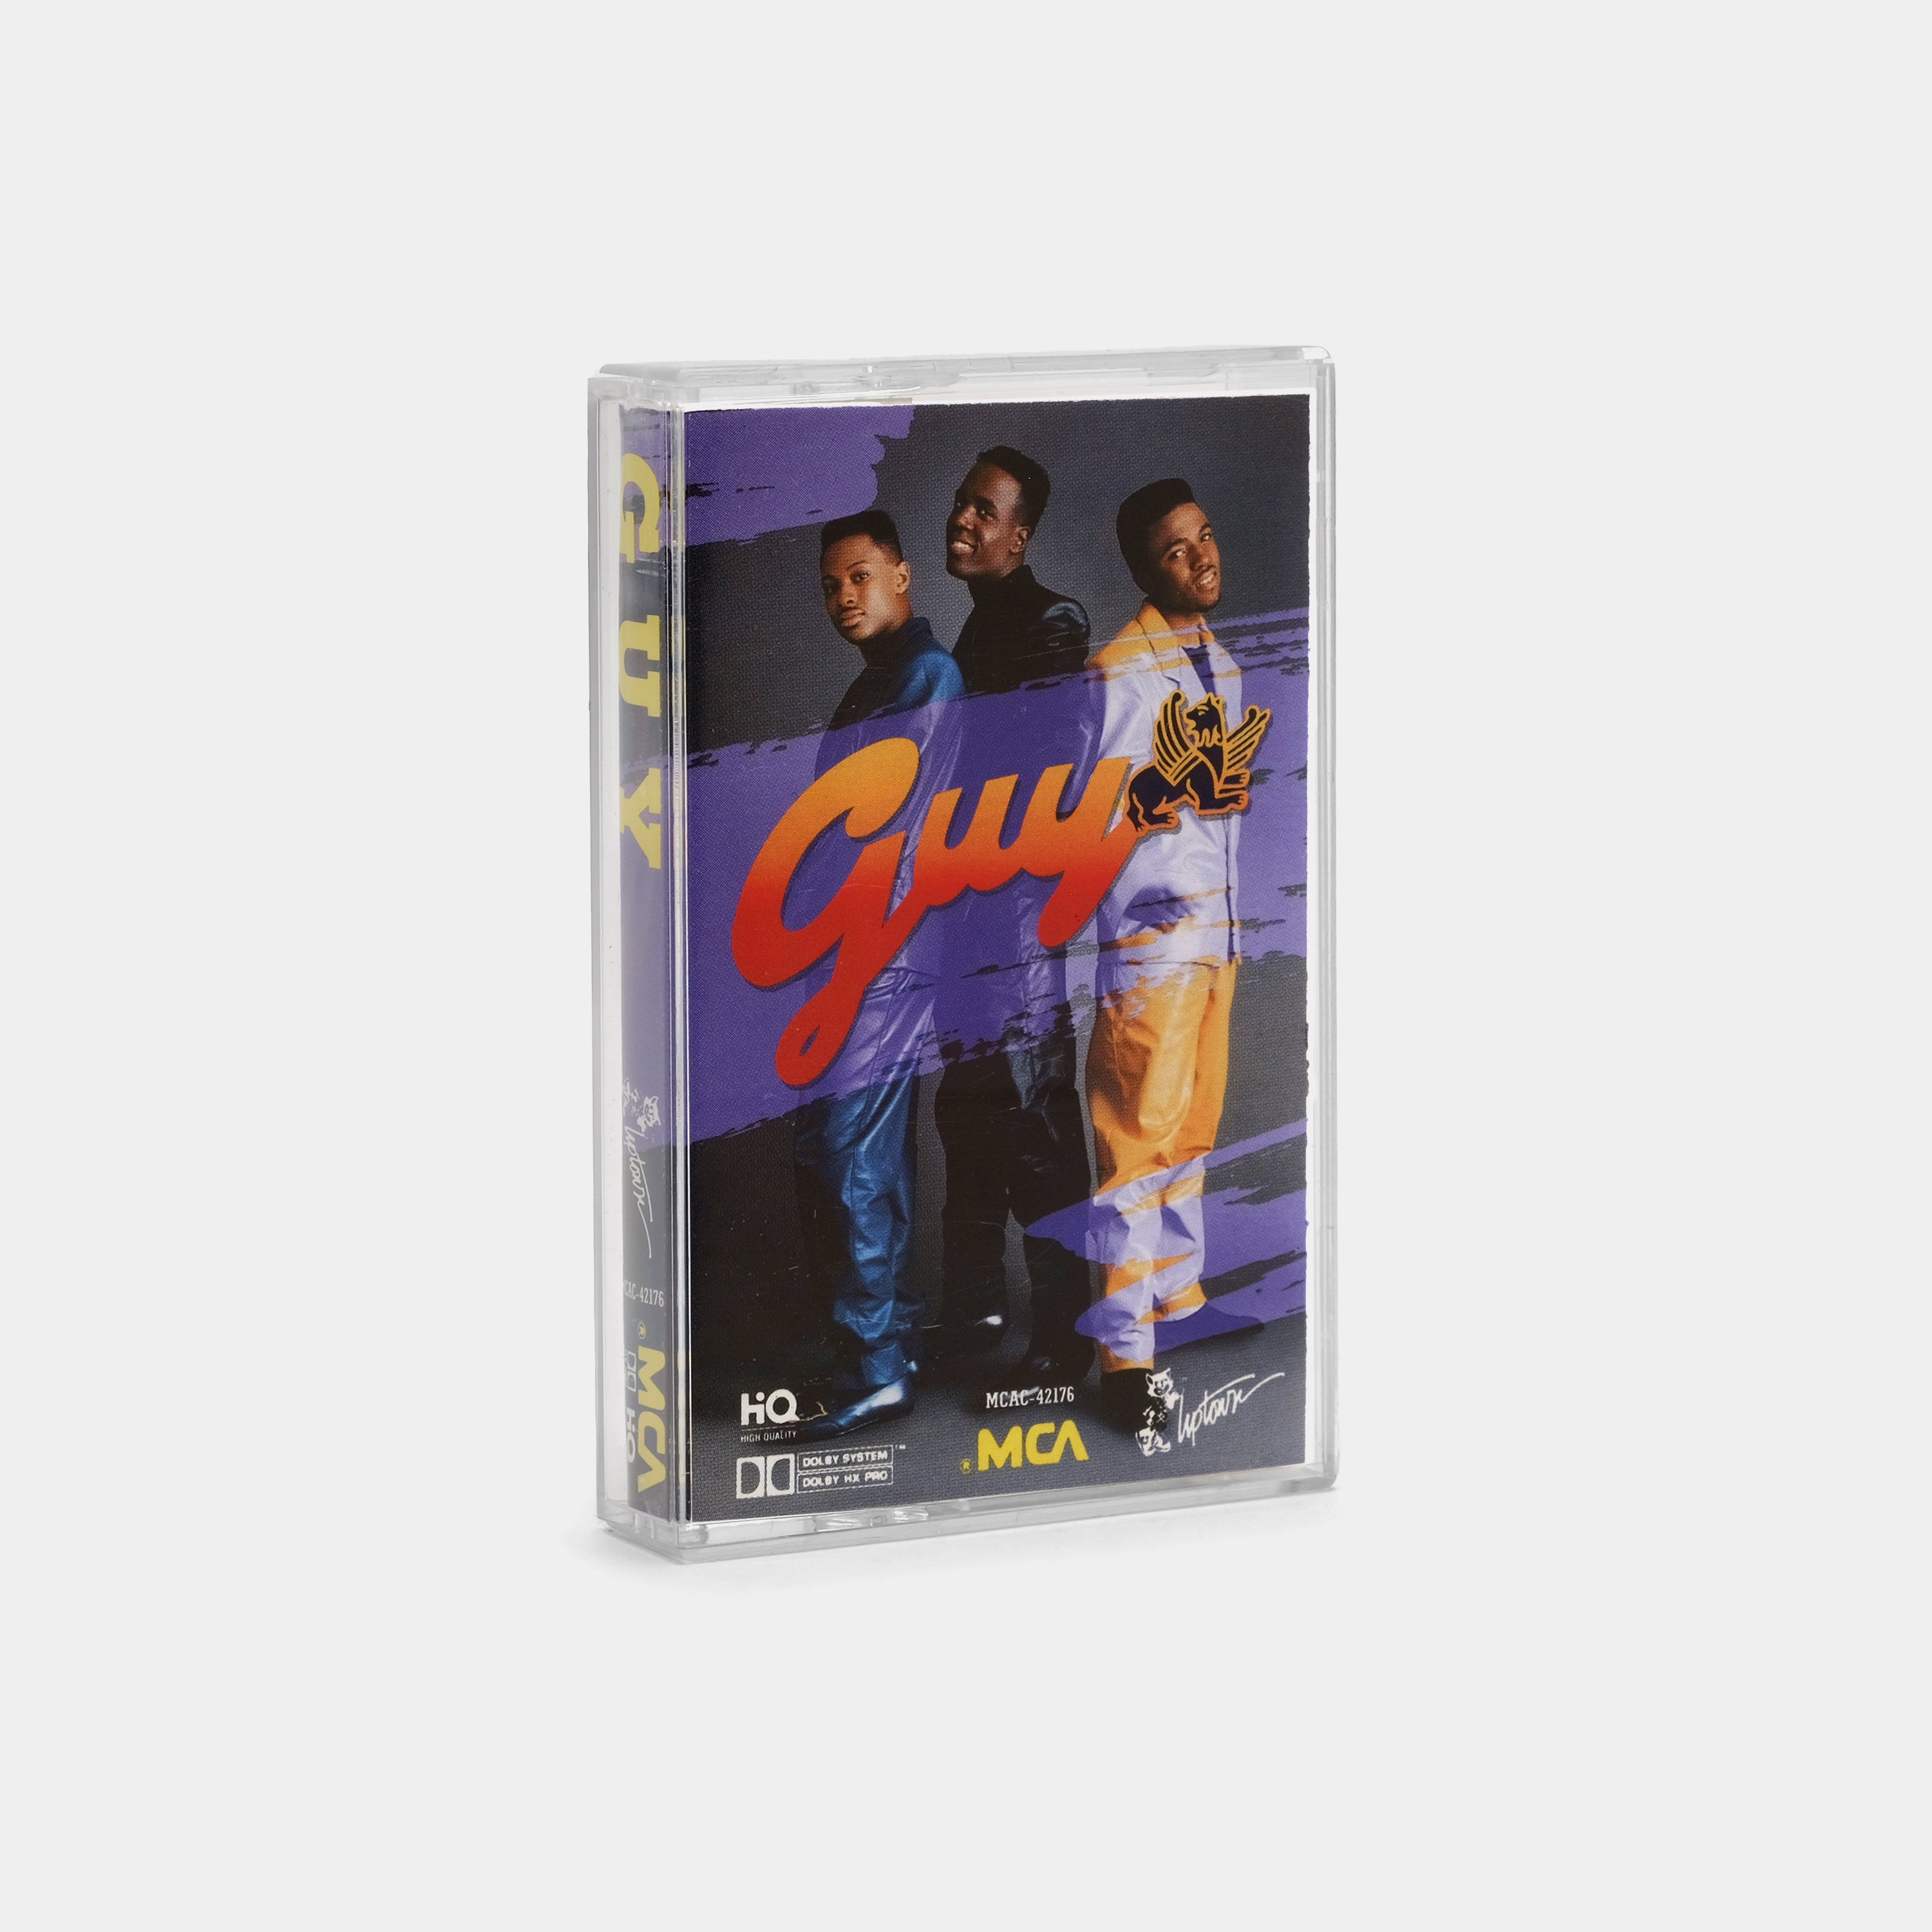 Guy - Guy Cassette Tape